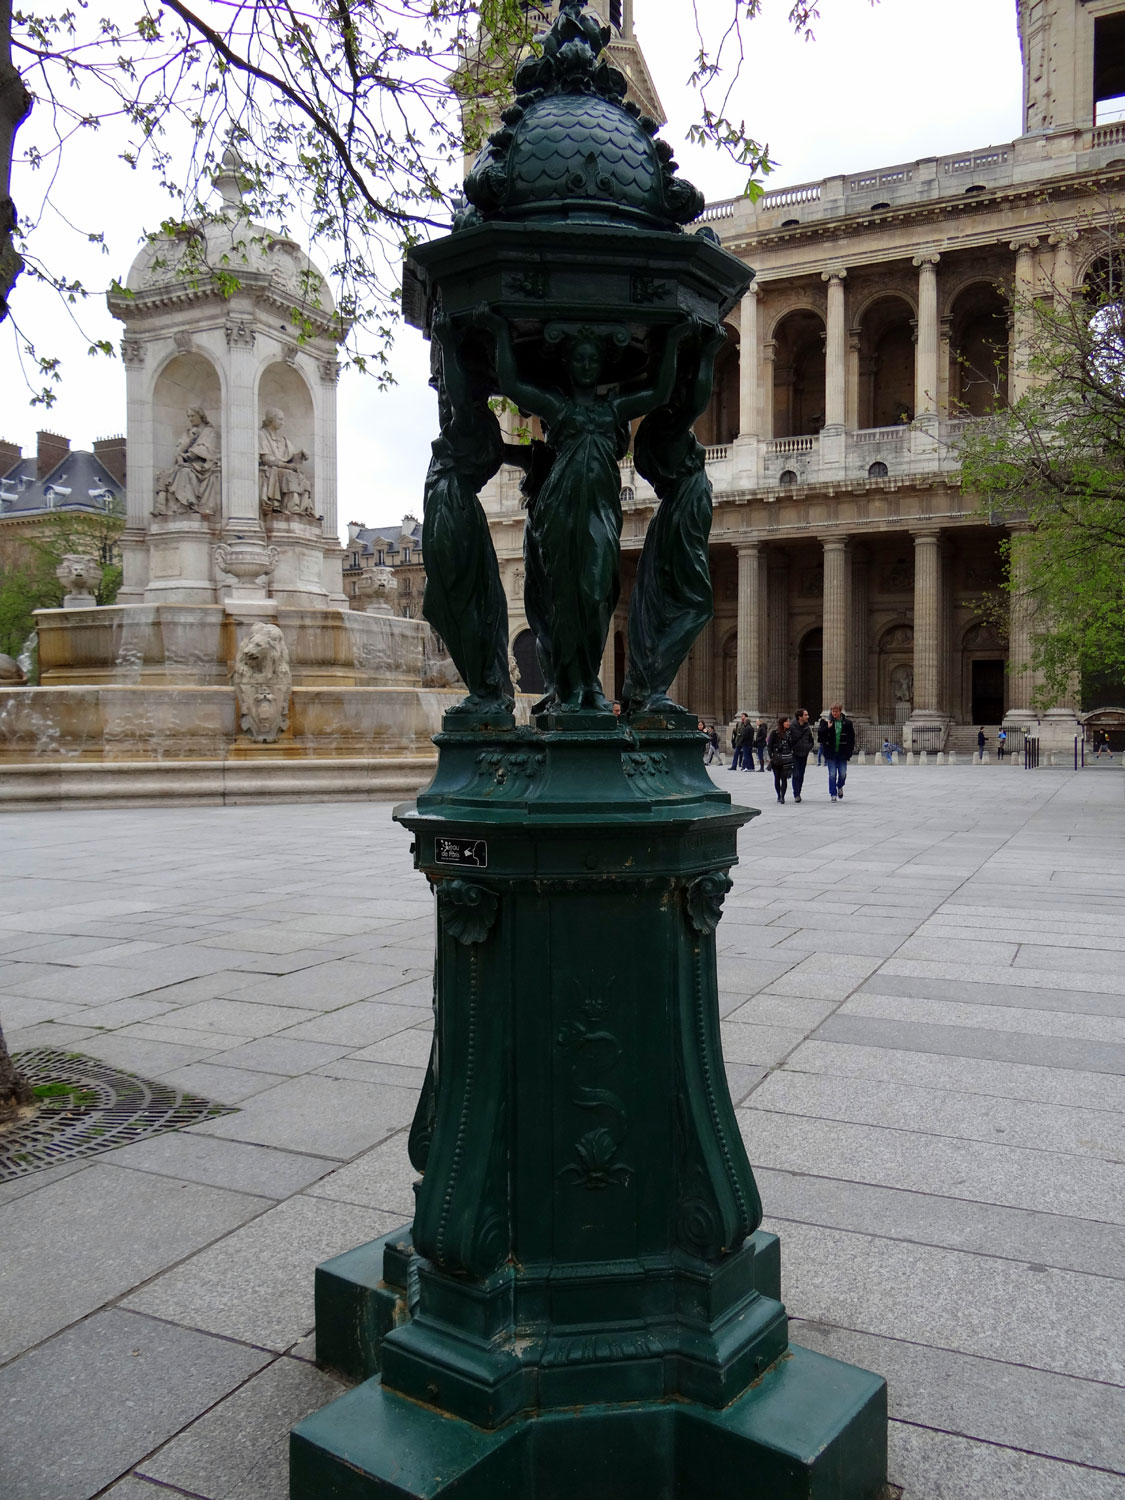 Place Saint-Sulpice